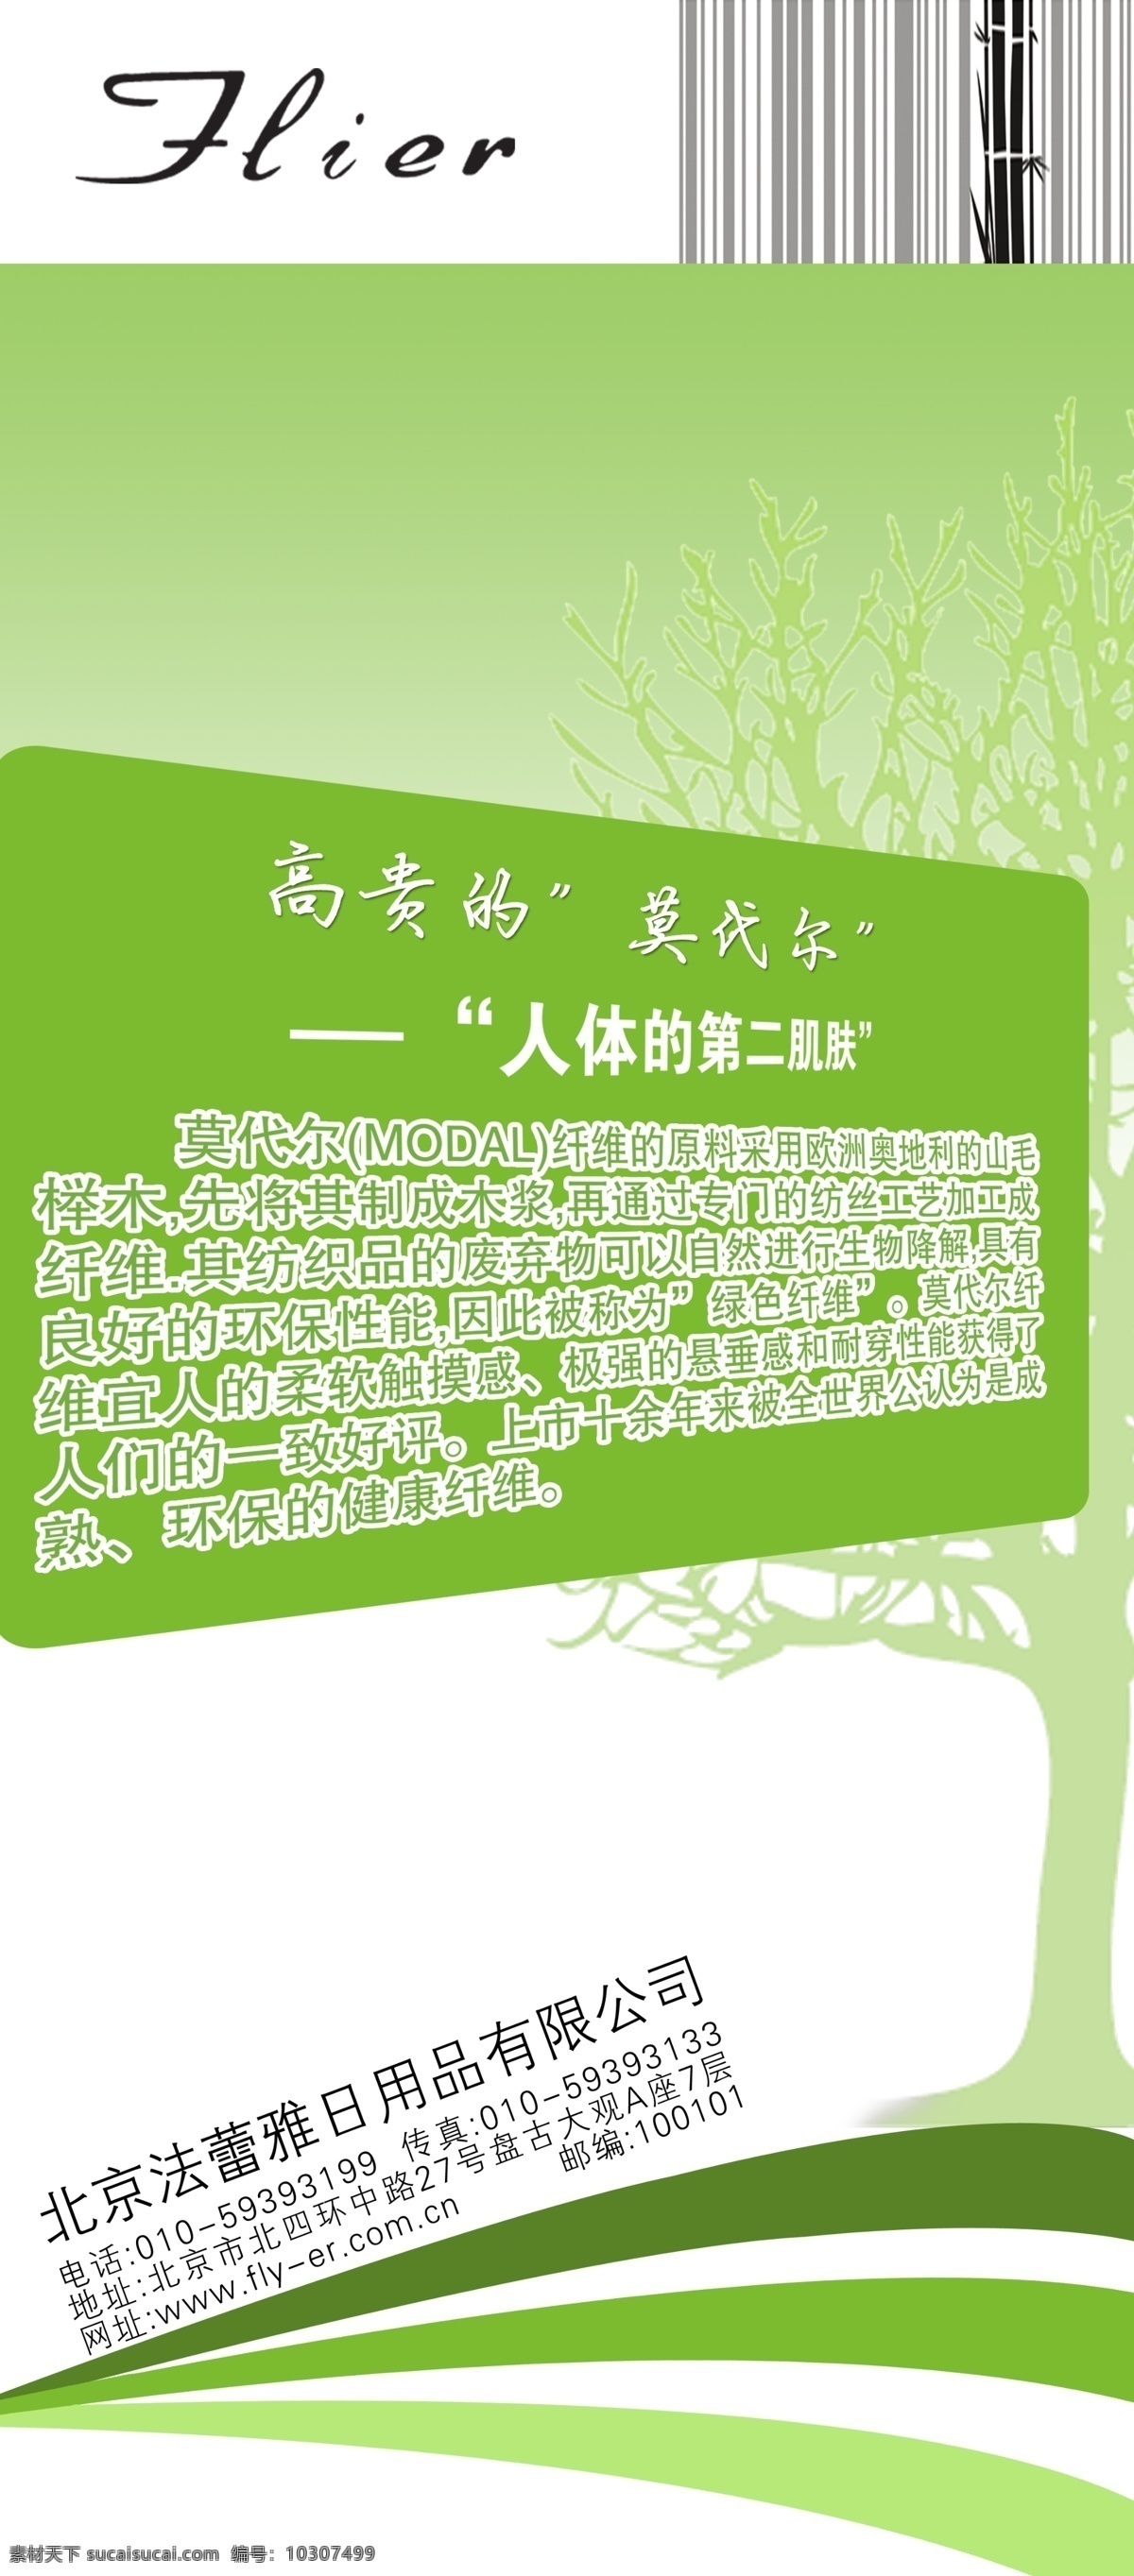 广告设计模板 环保 绿色 莫代尔 日用品 线条 易拉宝 模板下载 法蕾雅 展架 展板 北京 法 蕾 雅 有限公司 展板模板 源文件 易拉宝设计